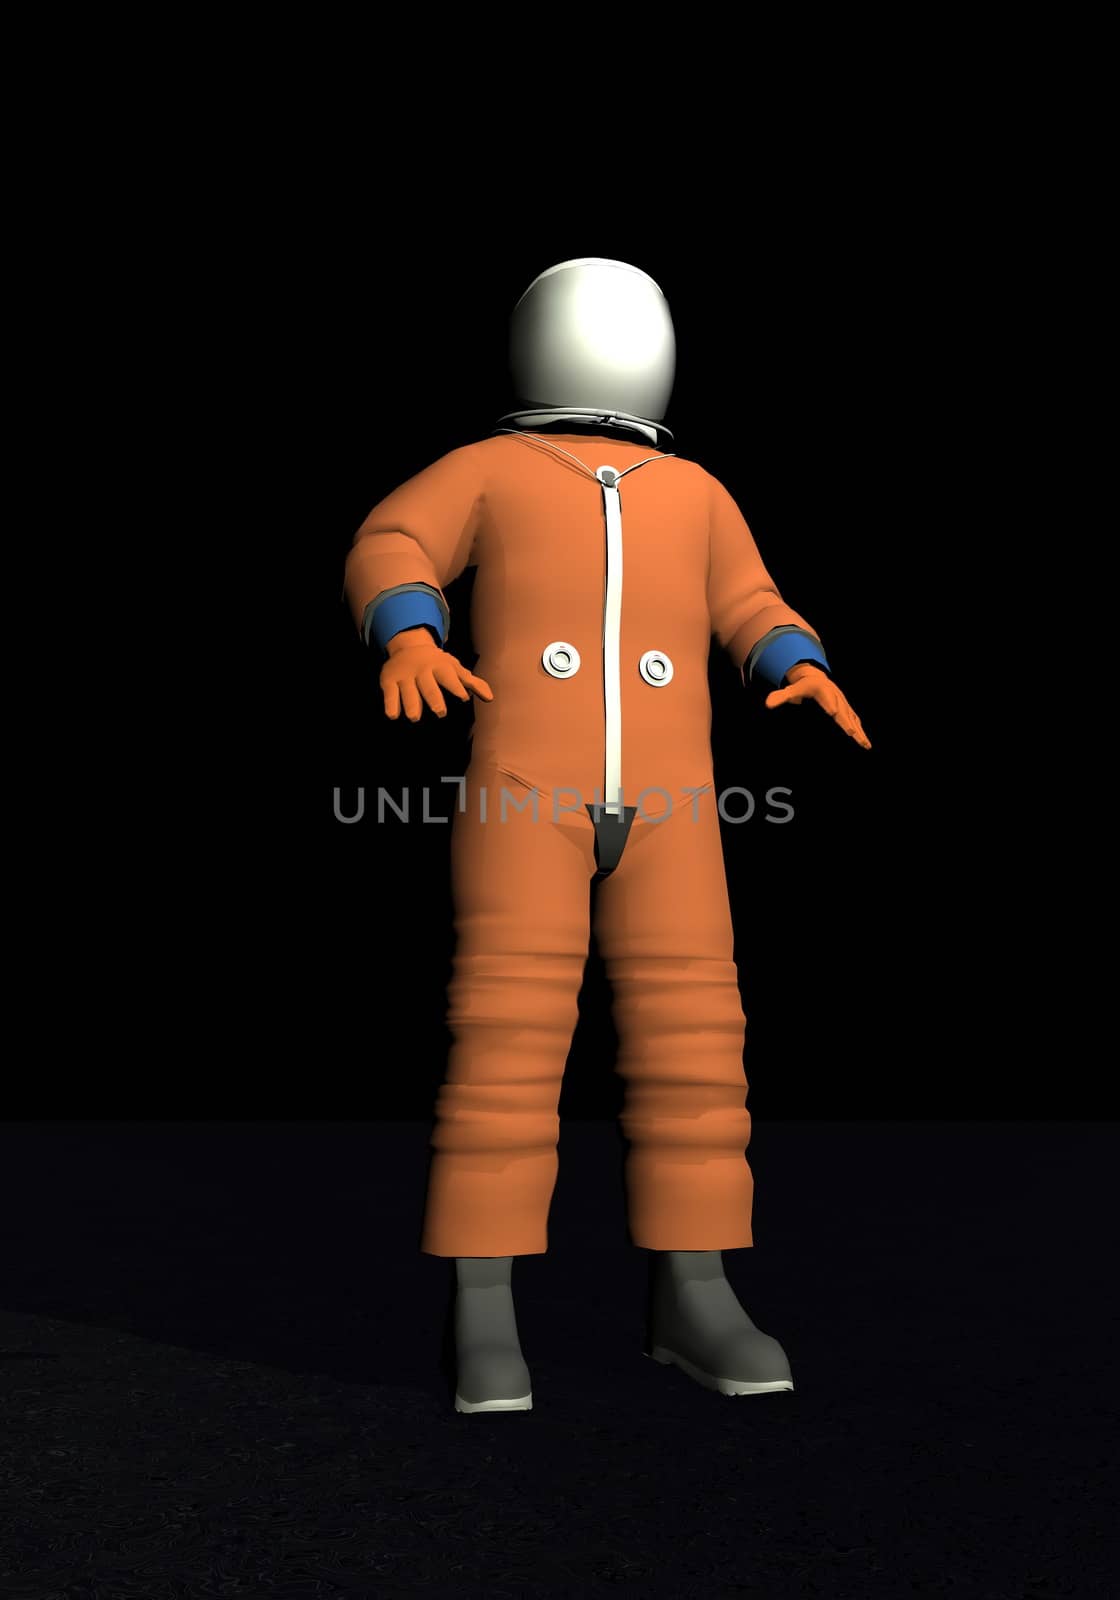 Advanced crew escape space suit - 3D render by Elenaphotos21